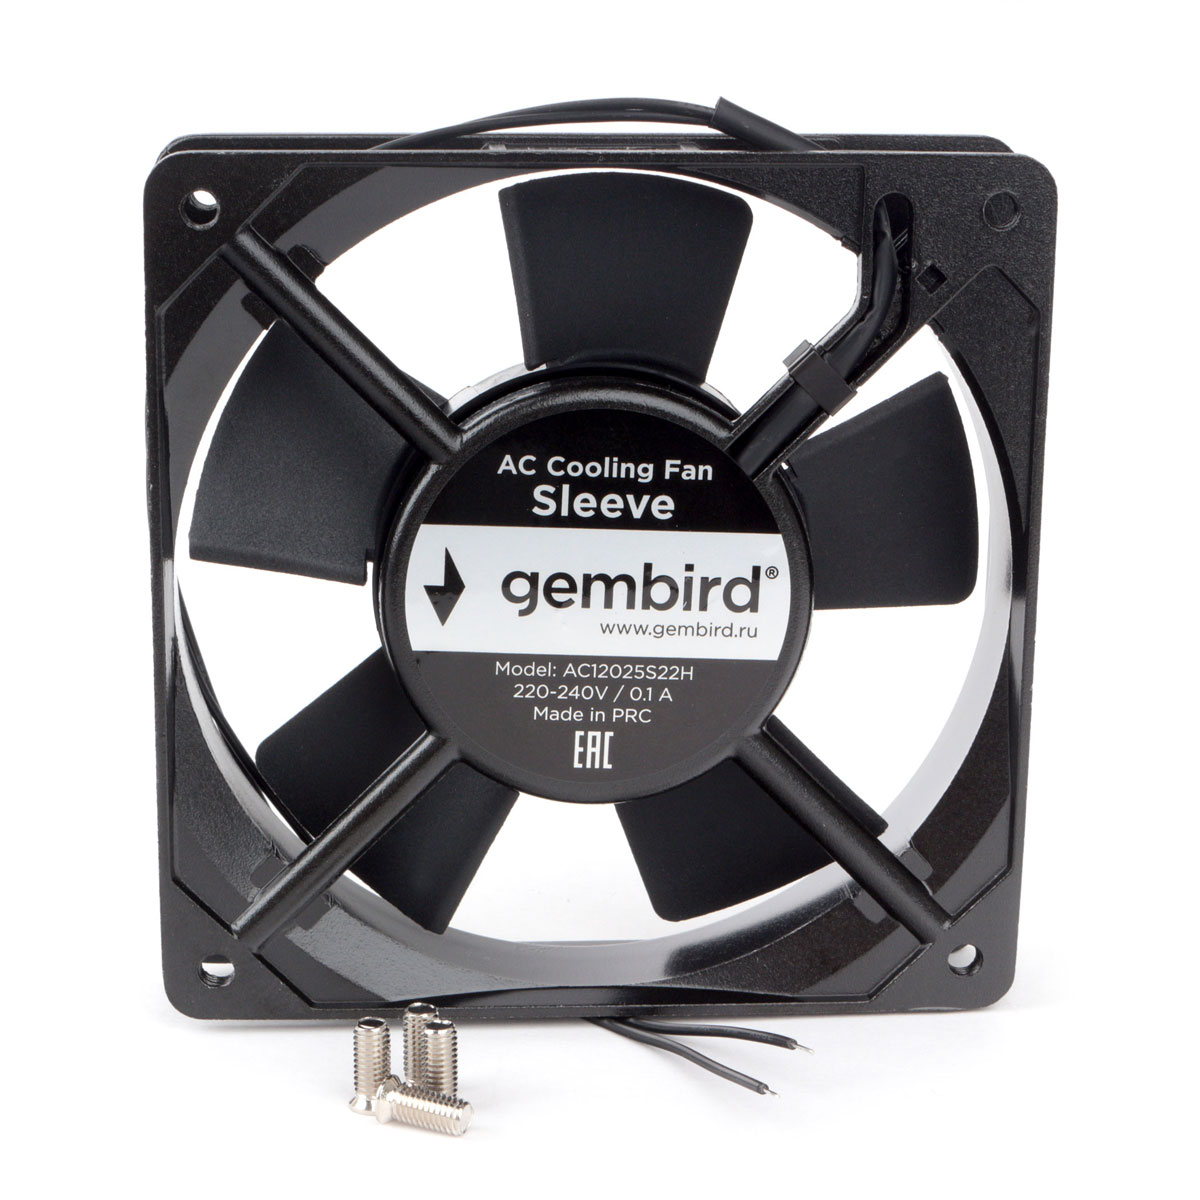 Вентилятор Gembird, 120x120x25, 220 В, черный (AC12025S22H)